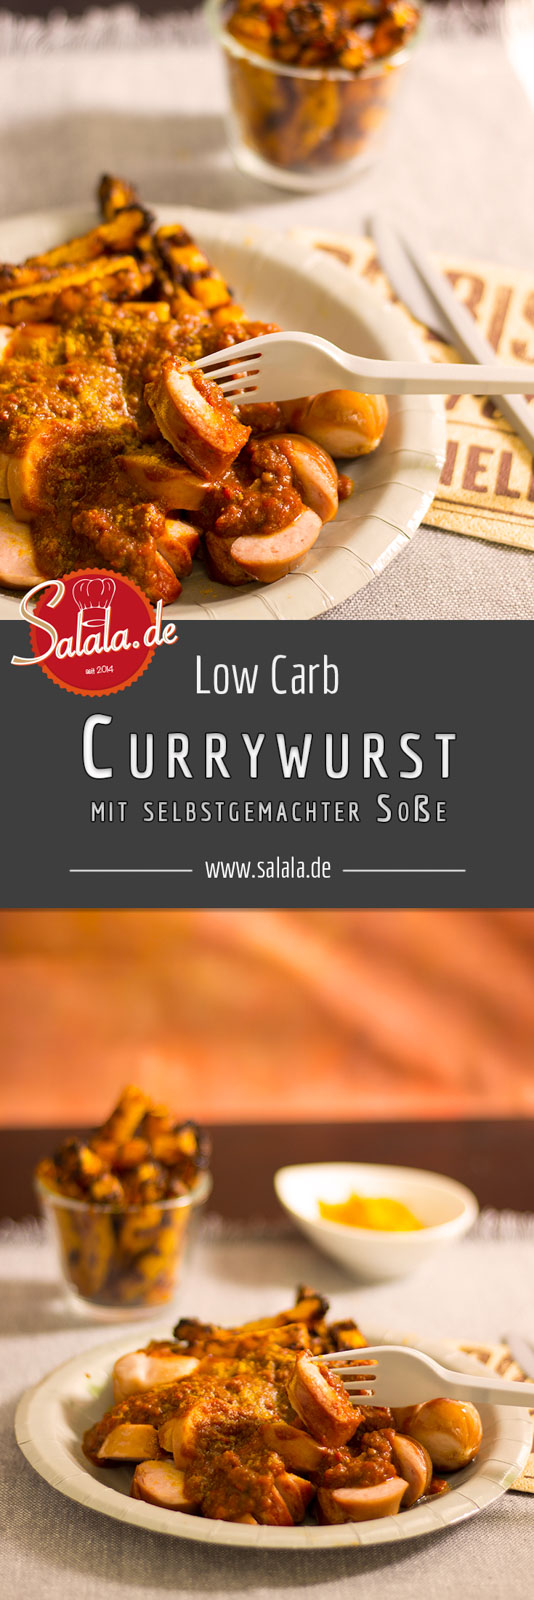 Currywurst selber machen - by salala.de - Low Carb Currysauce Rezept ohne Zucker